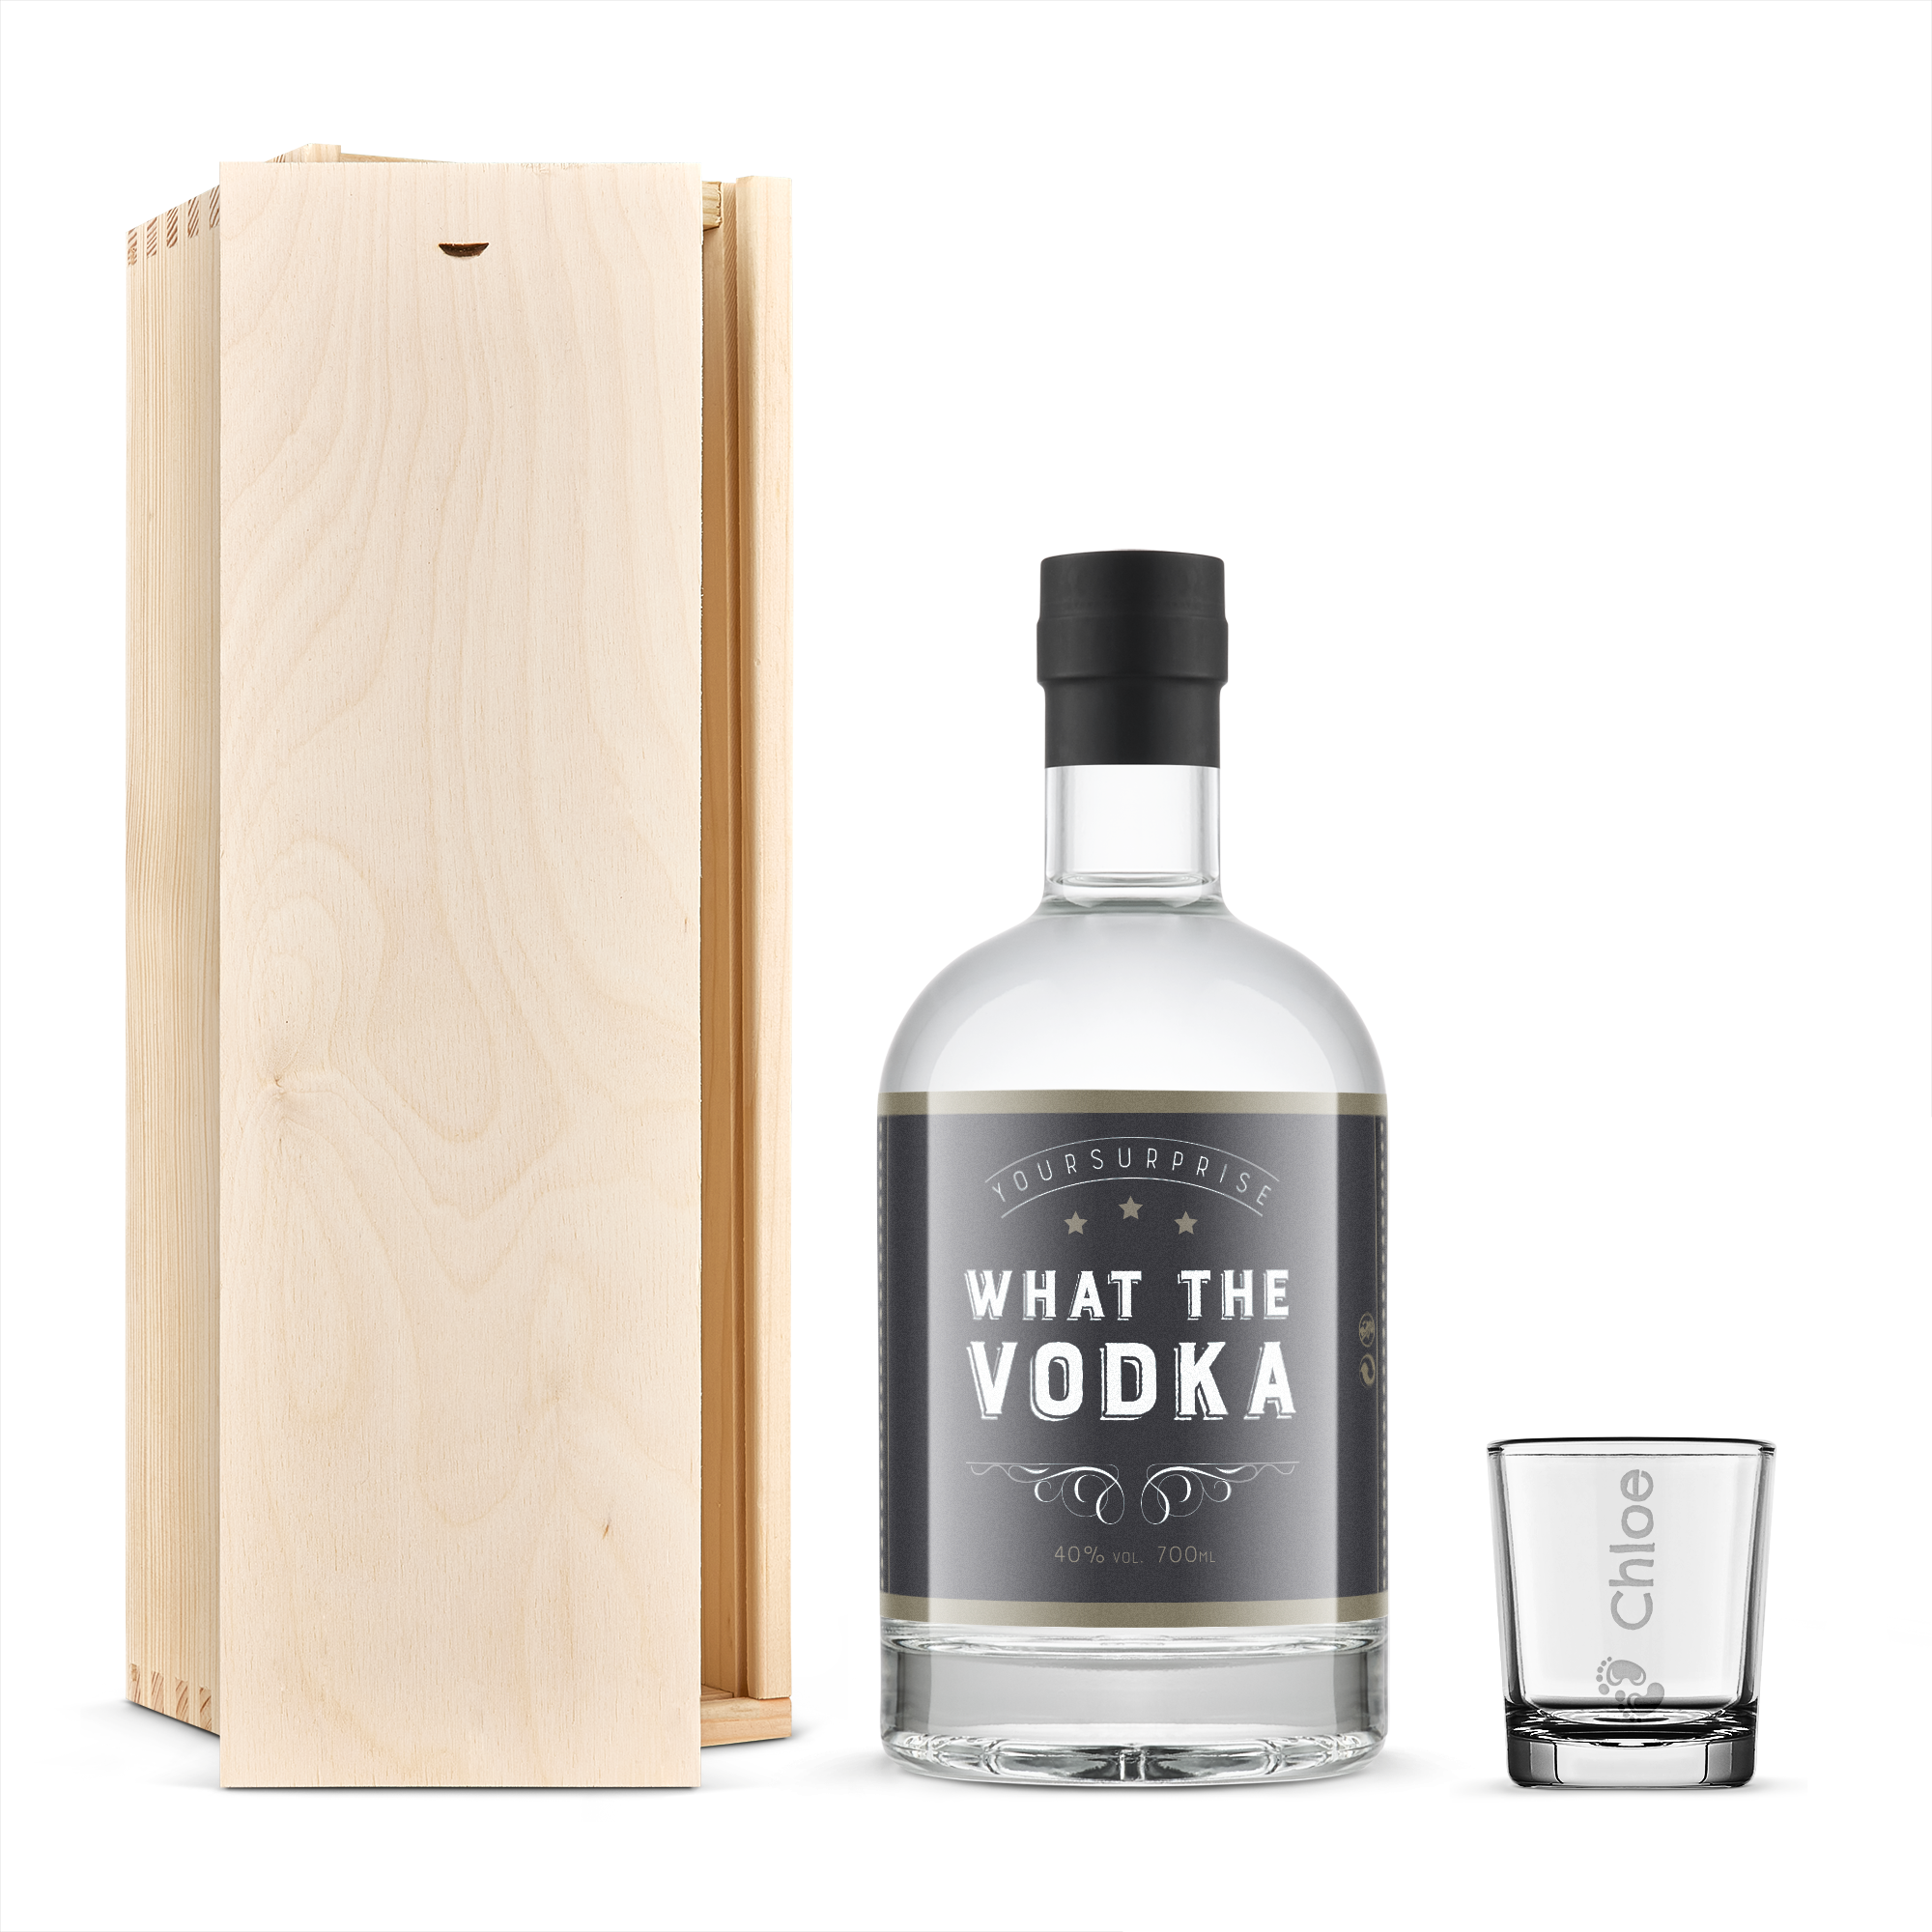 YourSurprise vodka - Ajándék szett üveggel